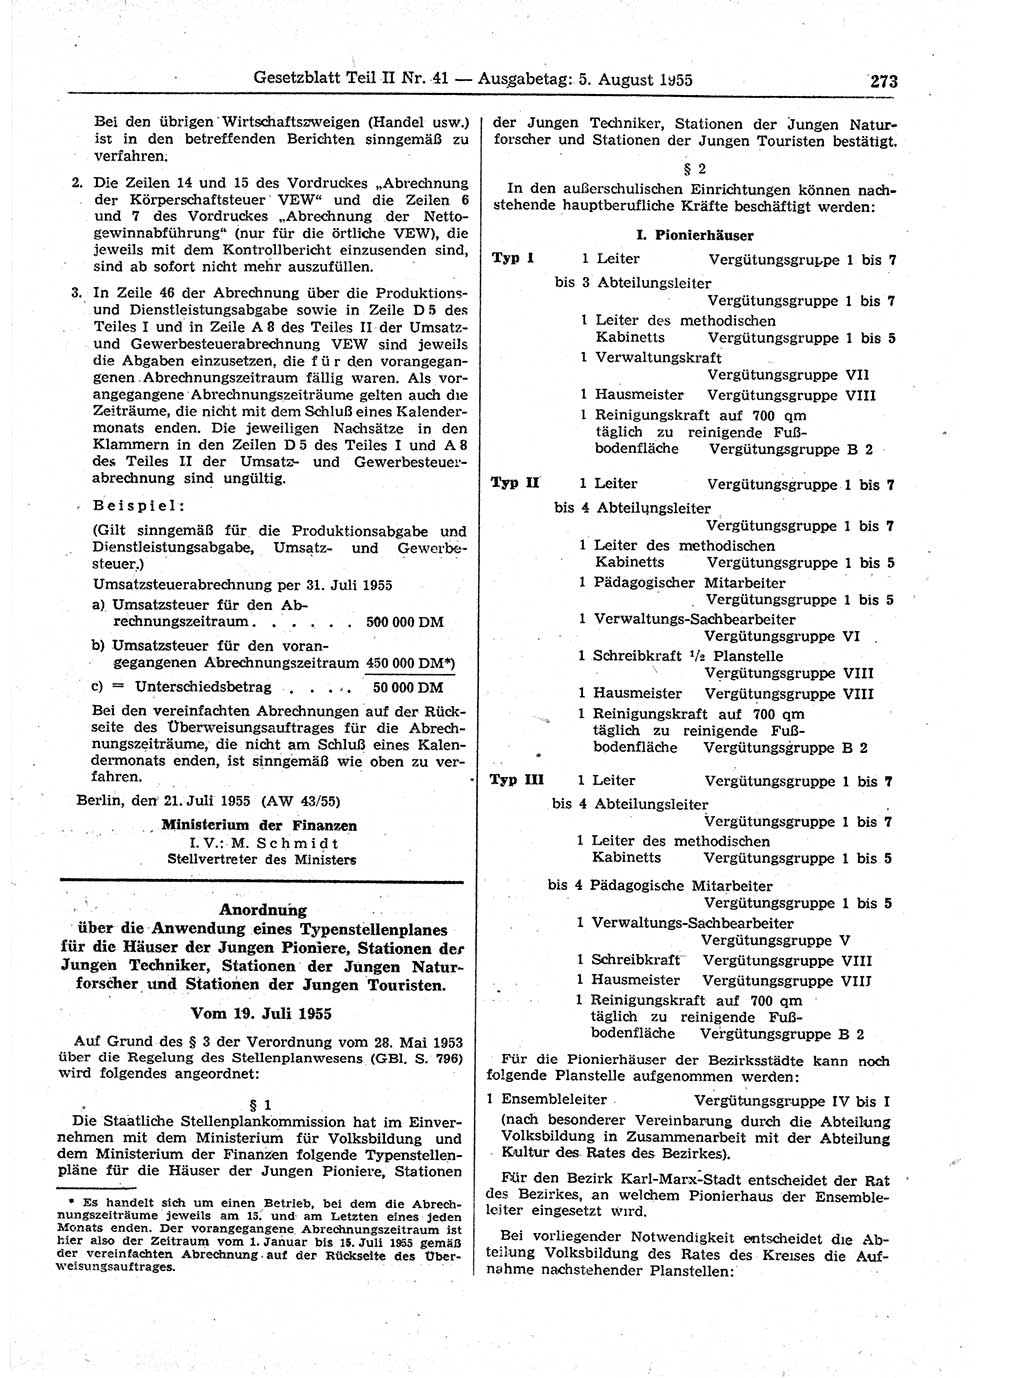 Gesetzblatt (GBl.) der Deutschen Demokratischen Republik (DDR) Teil ⅠⅠ 1955, Seite 273 (GBl. DDR ⅠⅠ 1955, S. 273)